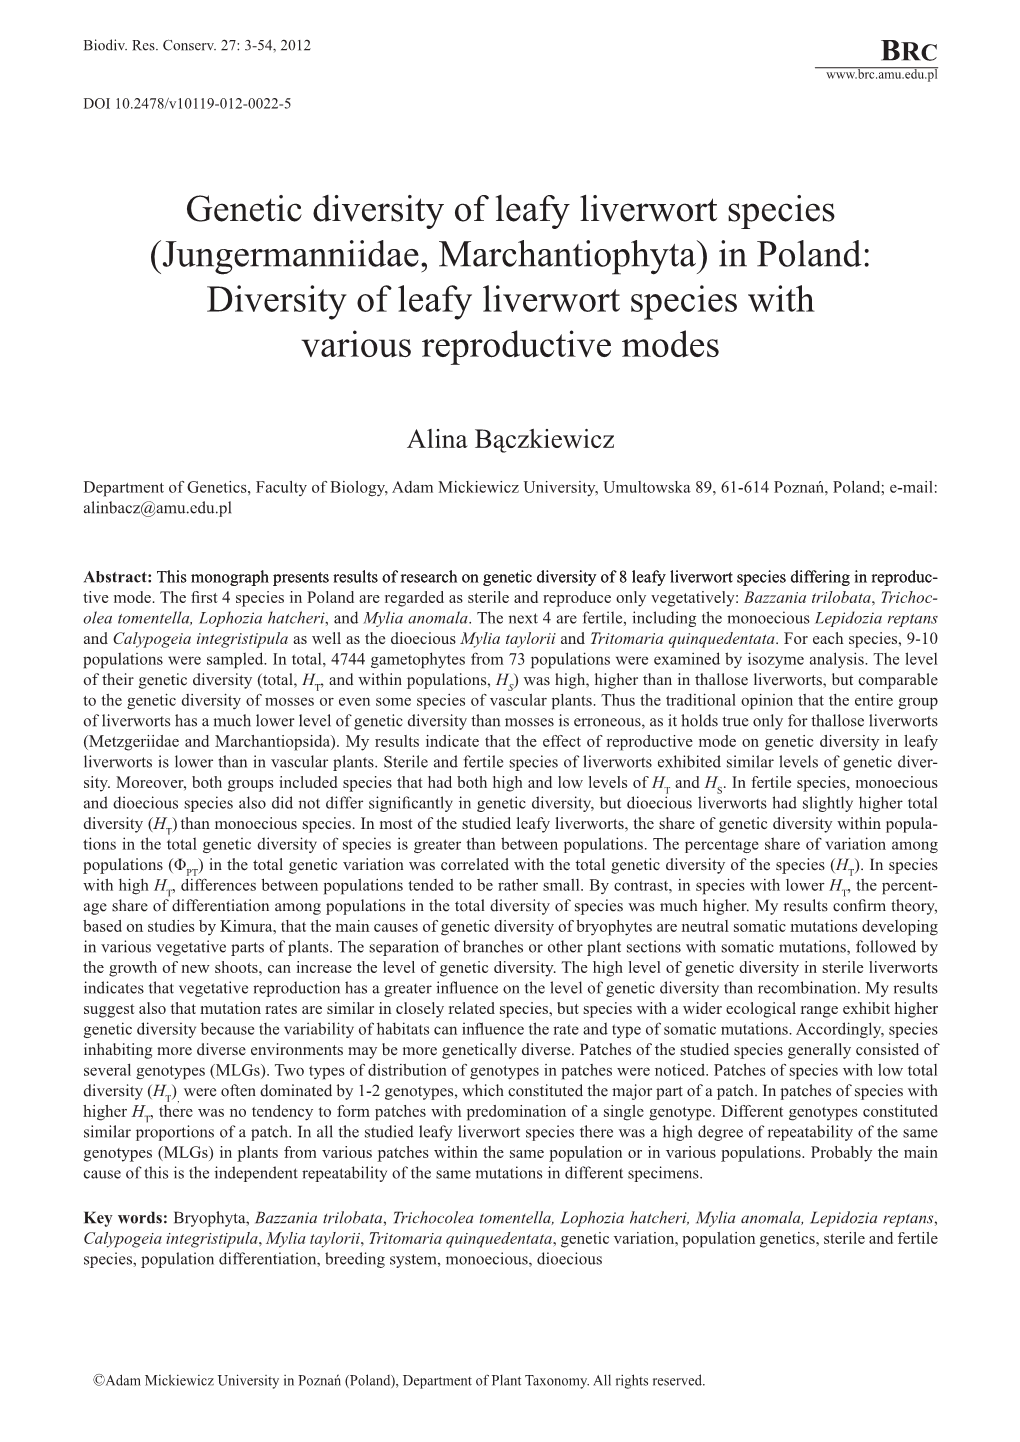 Genetic Diversity of Leafy Liverwort Species (Jungermanniidae, Marchantiophyta) in Poland: Diversity of Leafy Liverwort Species with Various Reproductive Modes